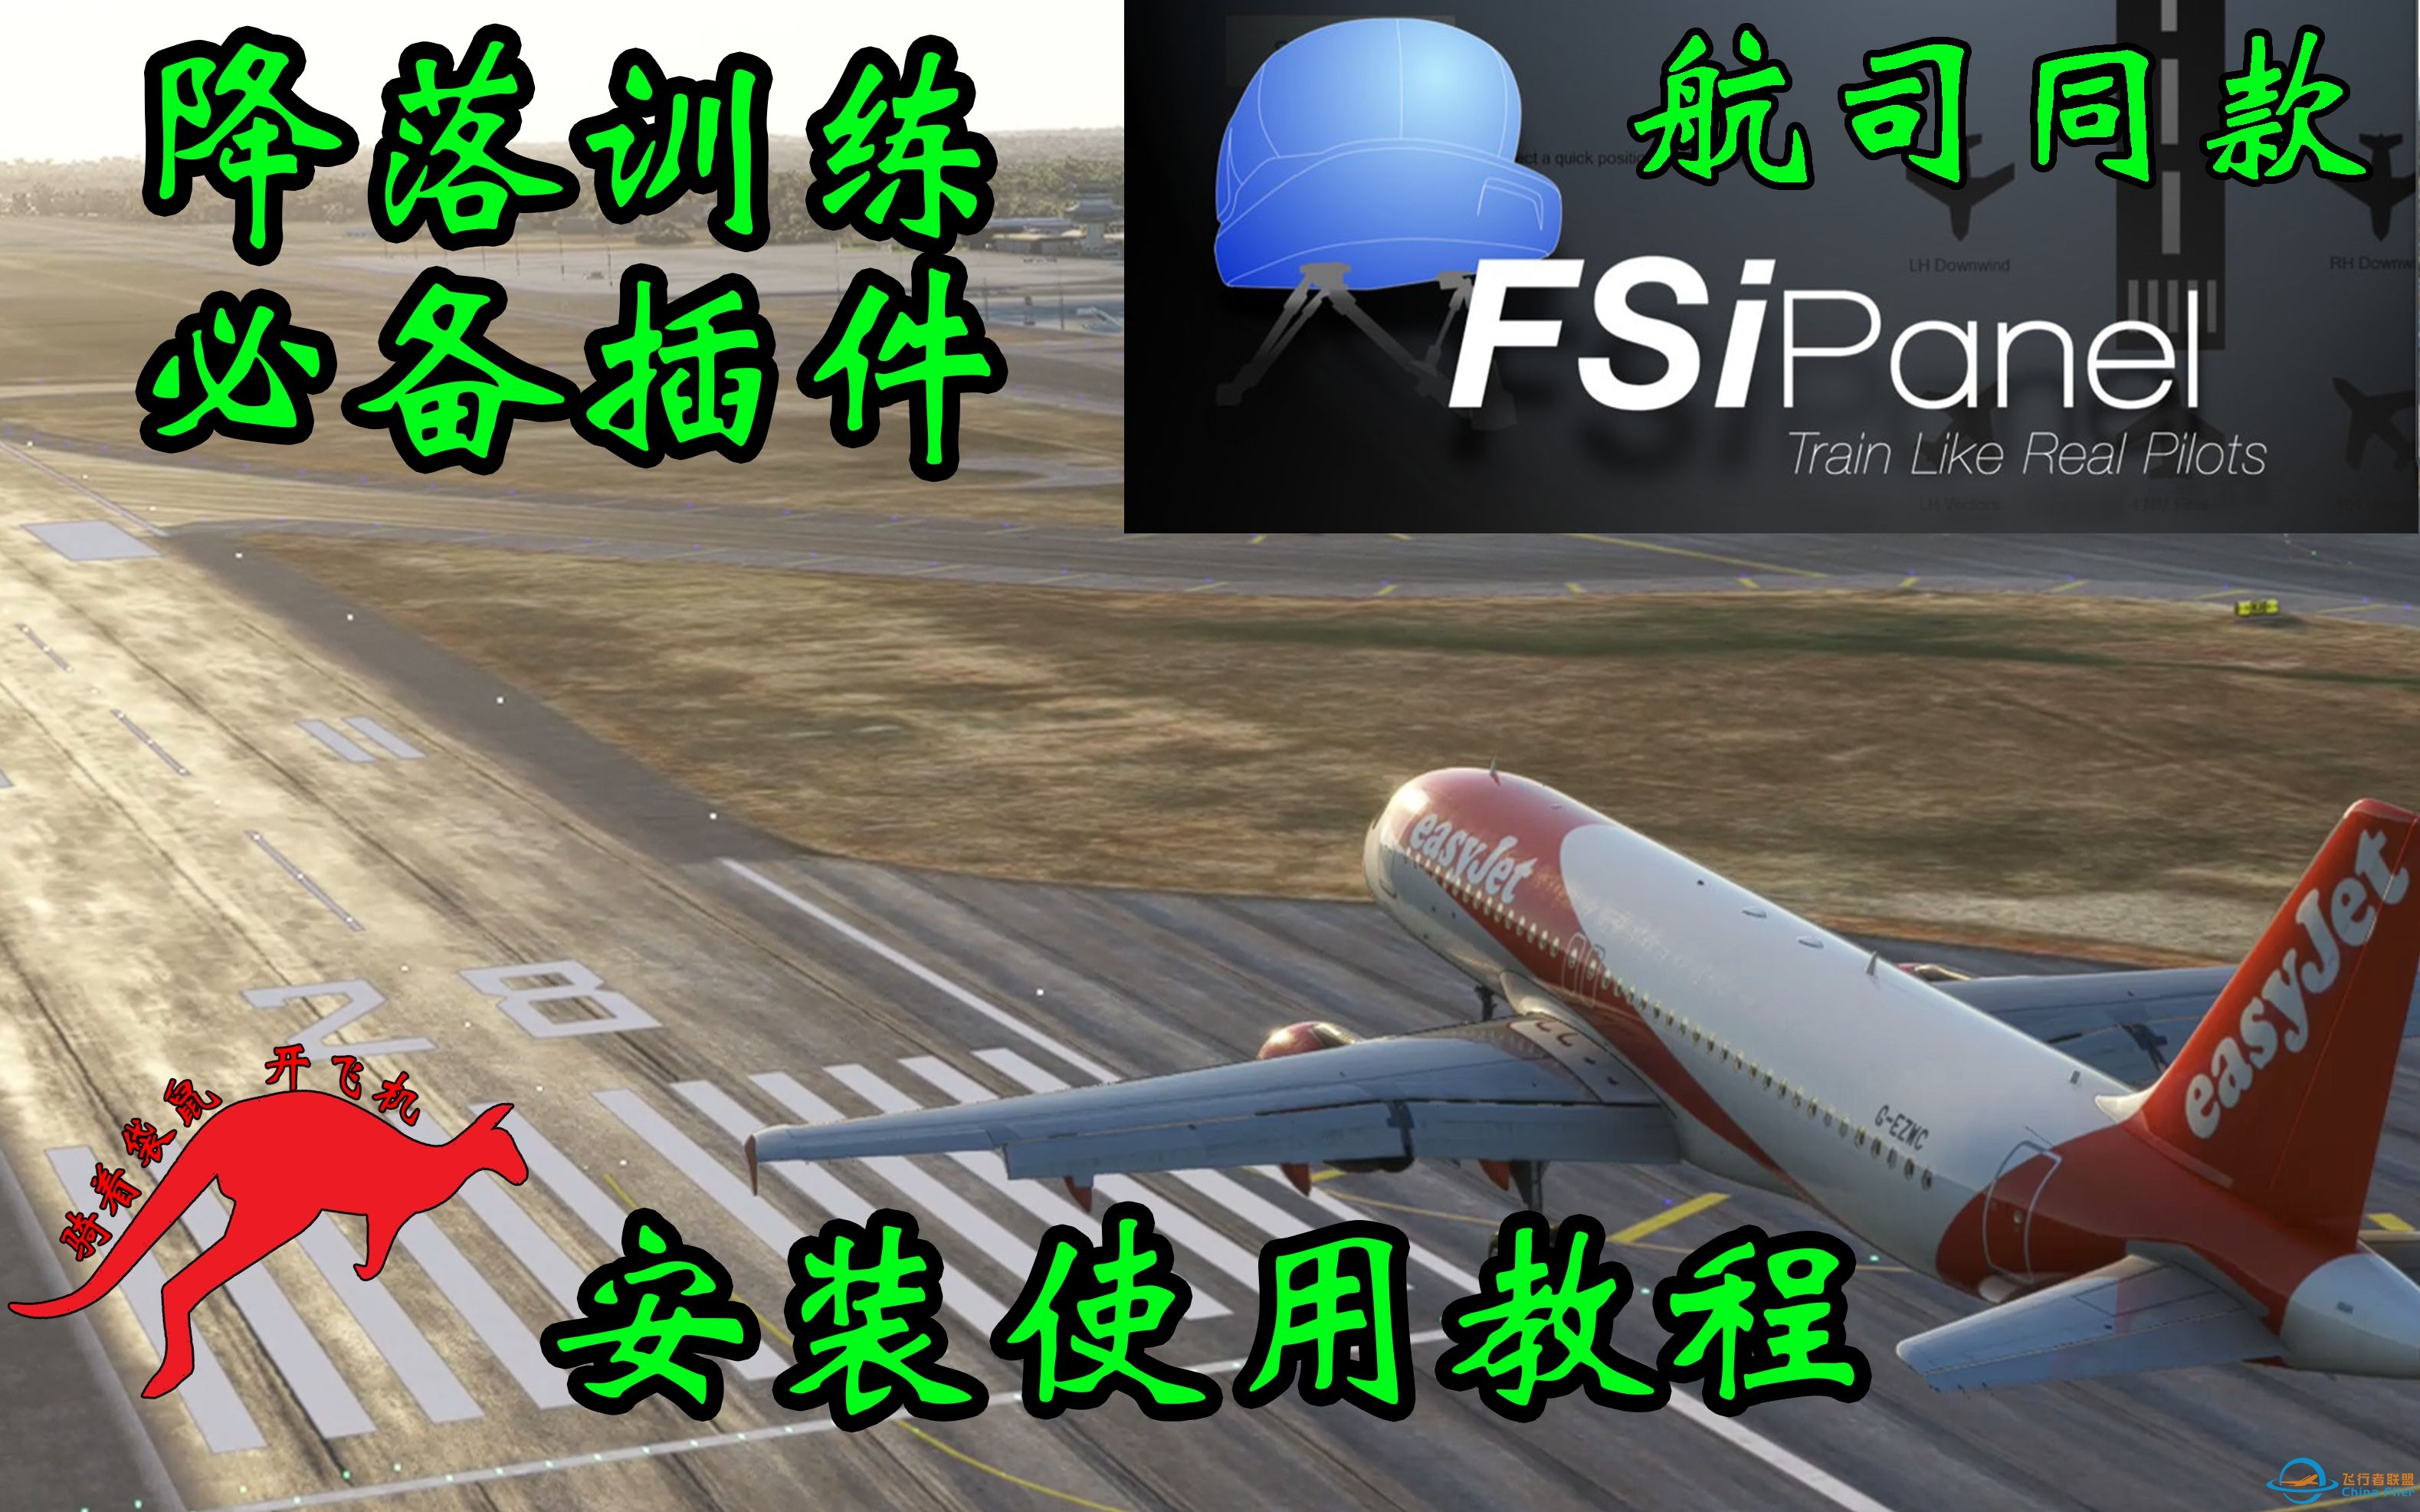 【微软飞行模拟】降落训练必备插件 FSiPanel航司复训同款 使用购买教程-3602 